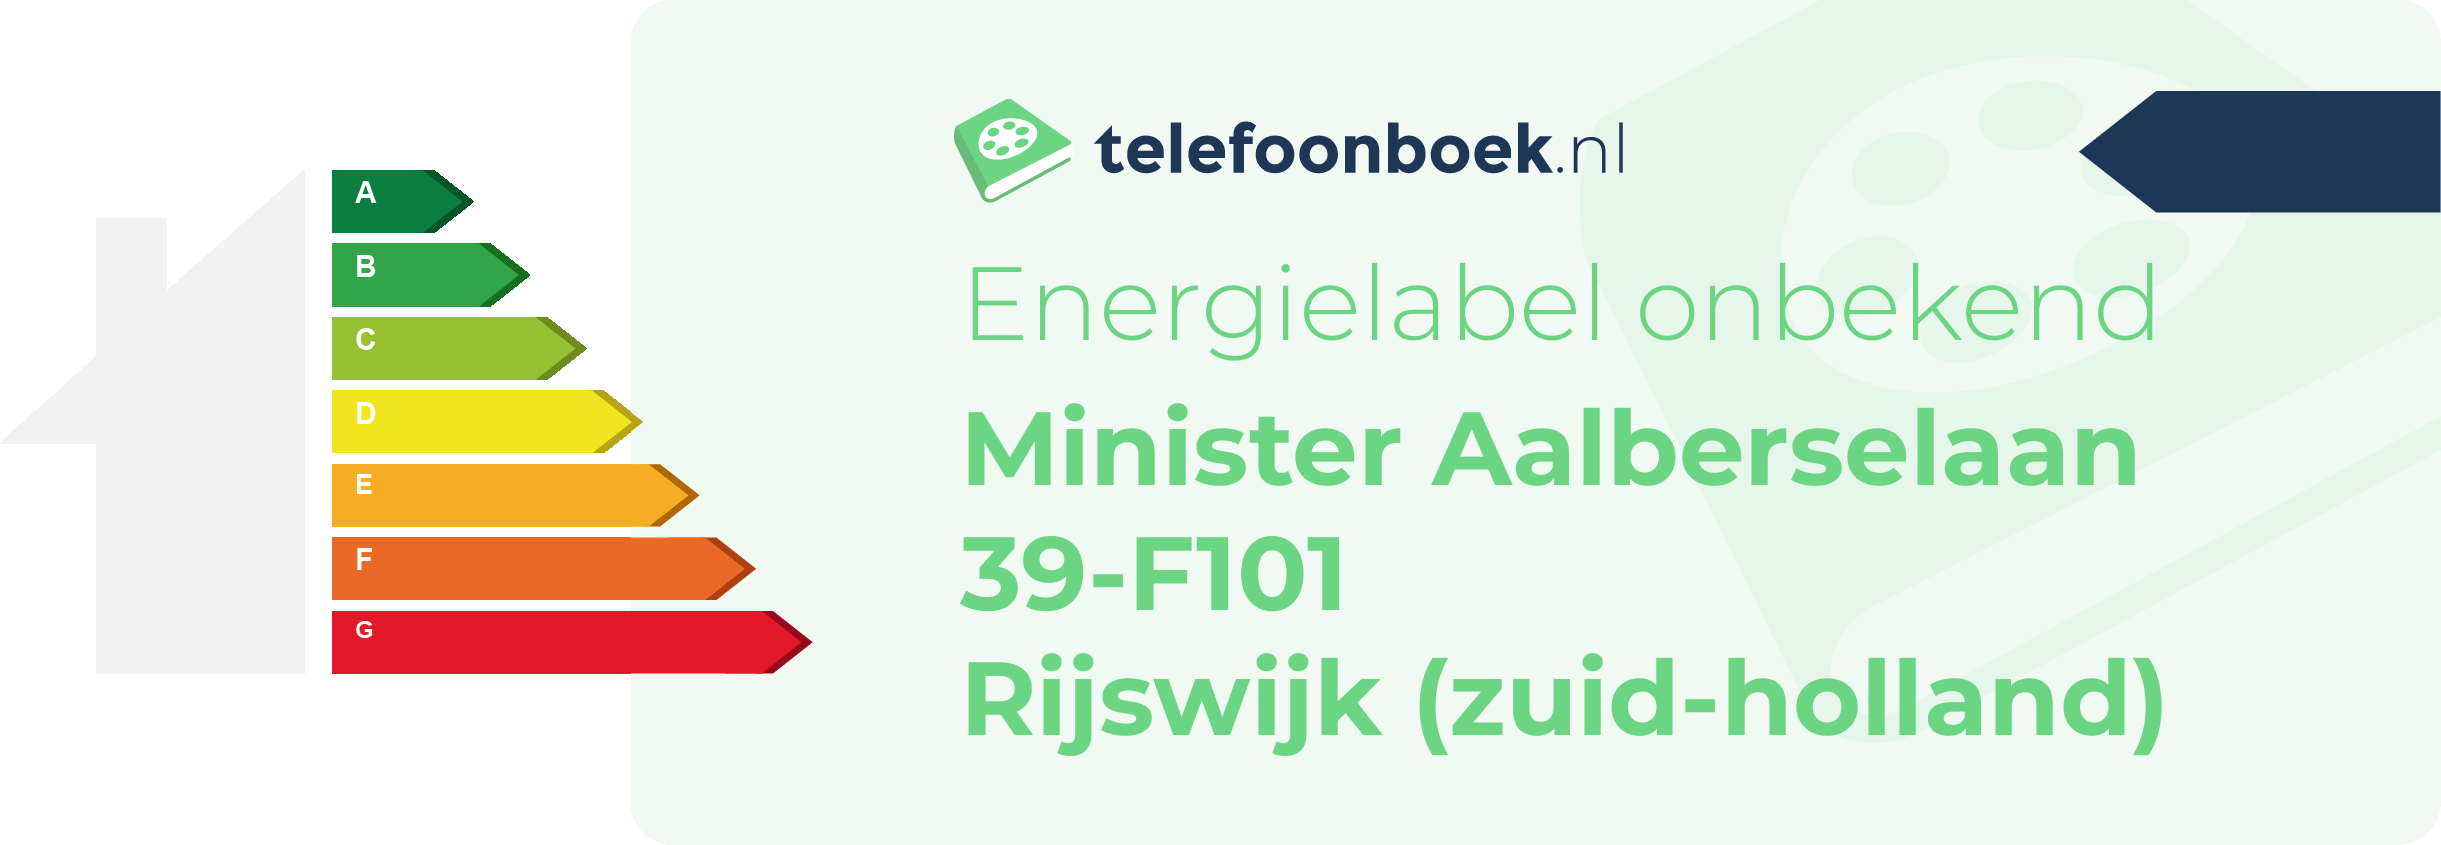 Energielabel Minister Aalberselaan 39-F101 Rijswijk (Zuid-Holland)